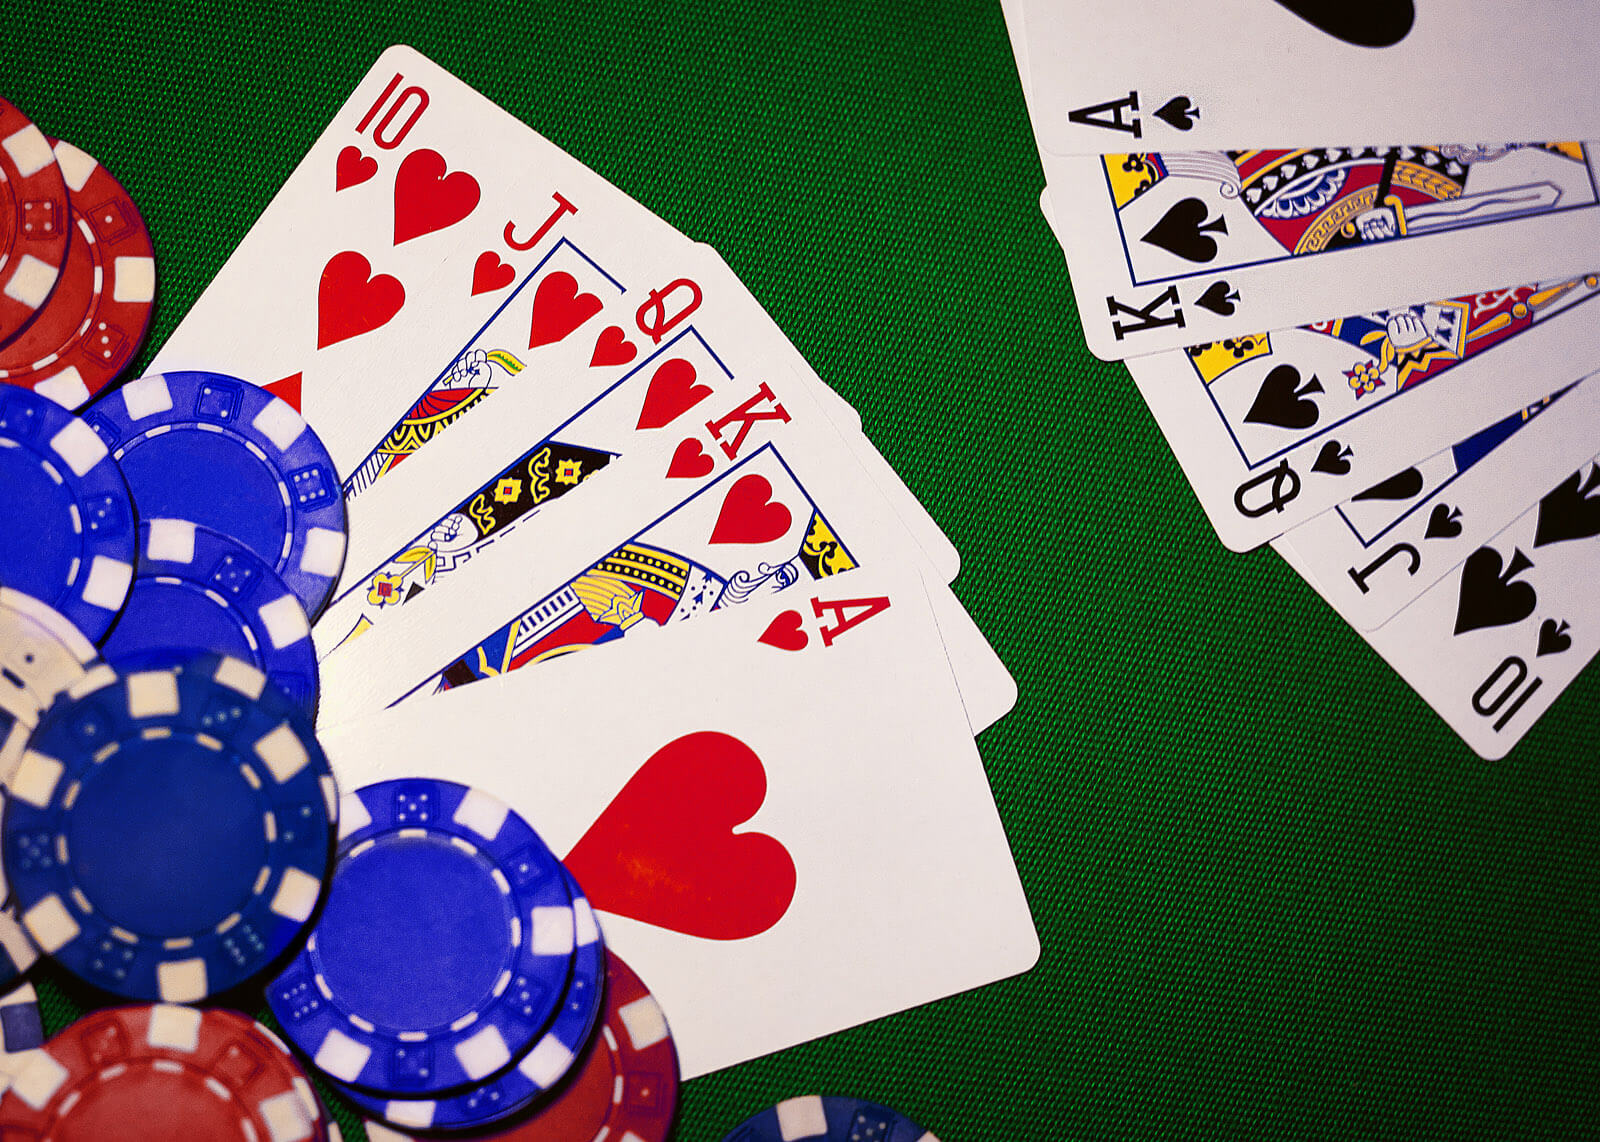 gambling casino royal flush of spades straight royal of hearts